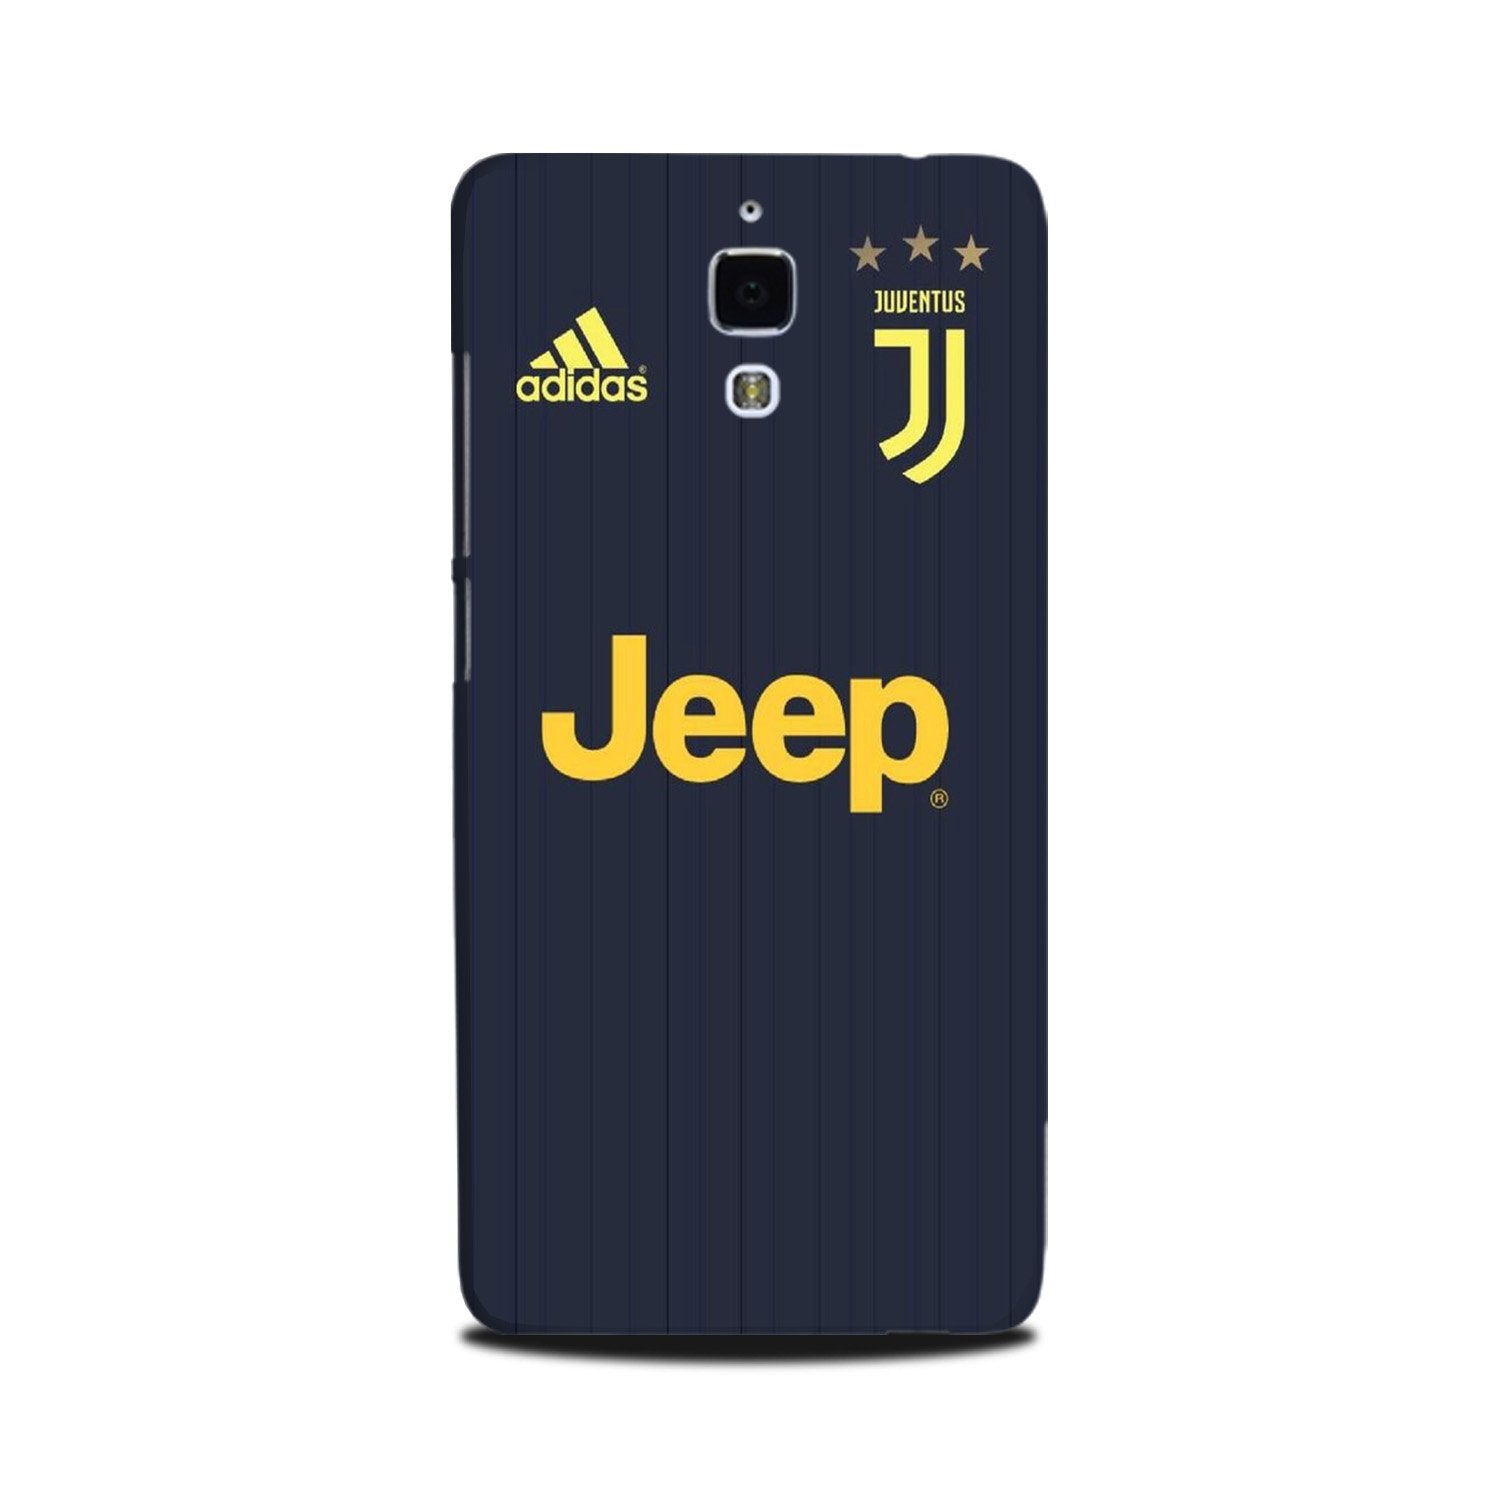 Jeep Juventus Case for Mi 4(Design - 161)